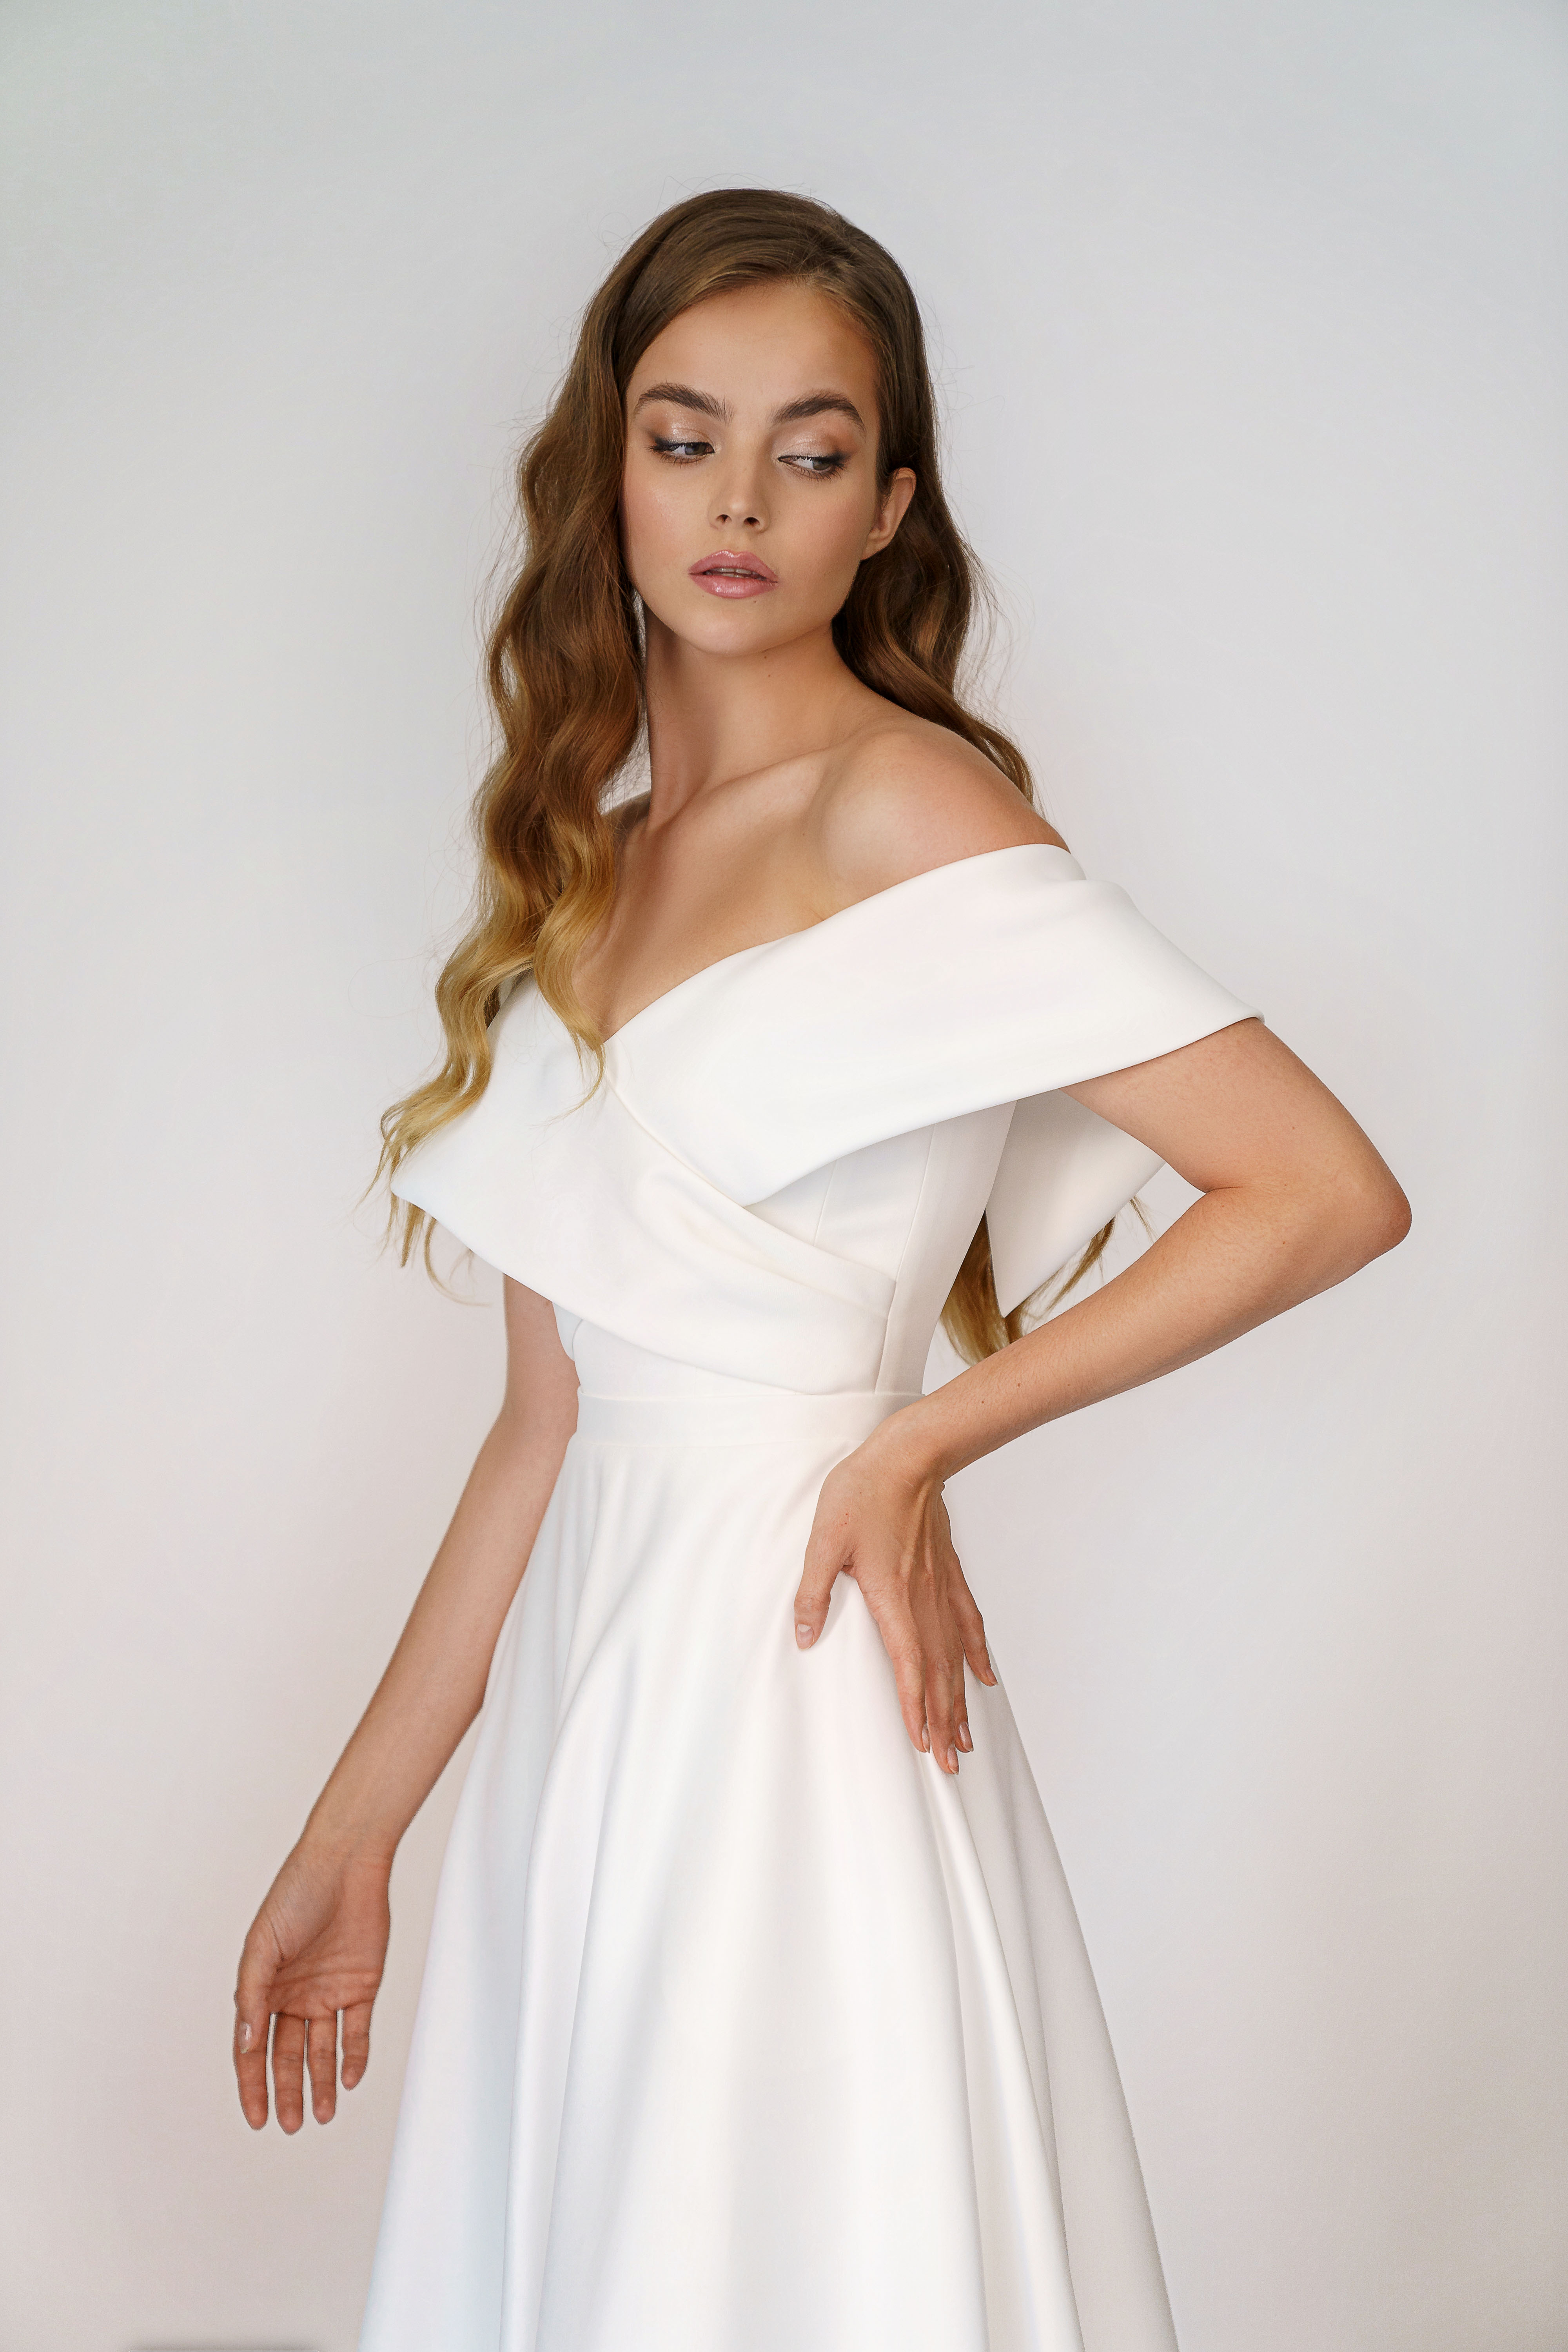 Свадебное платье «Олимпия» Марта — купить в Казани платье Олимпия из коллекции 2021 года